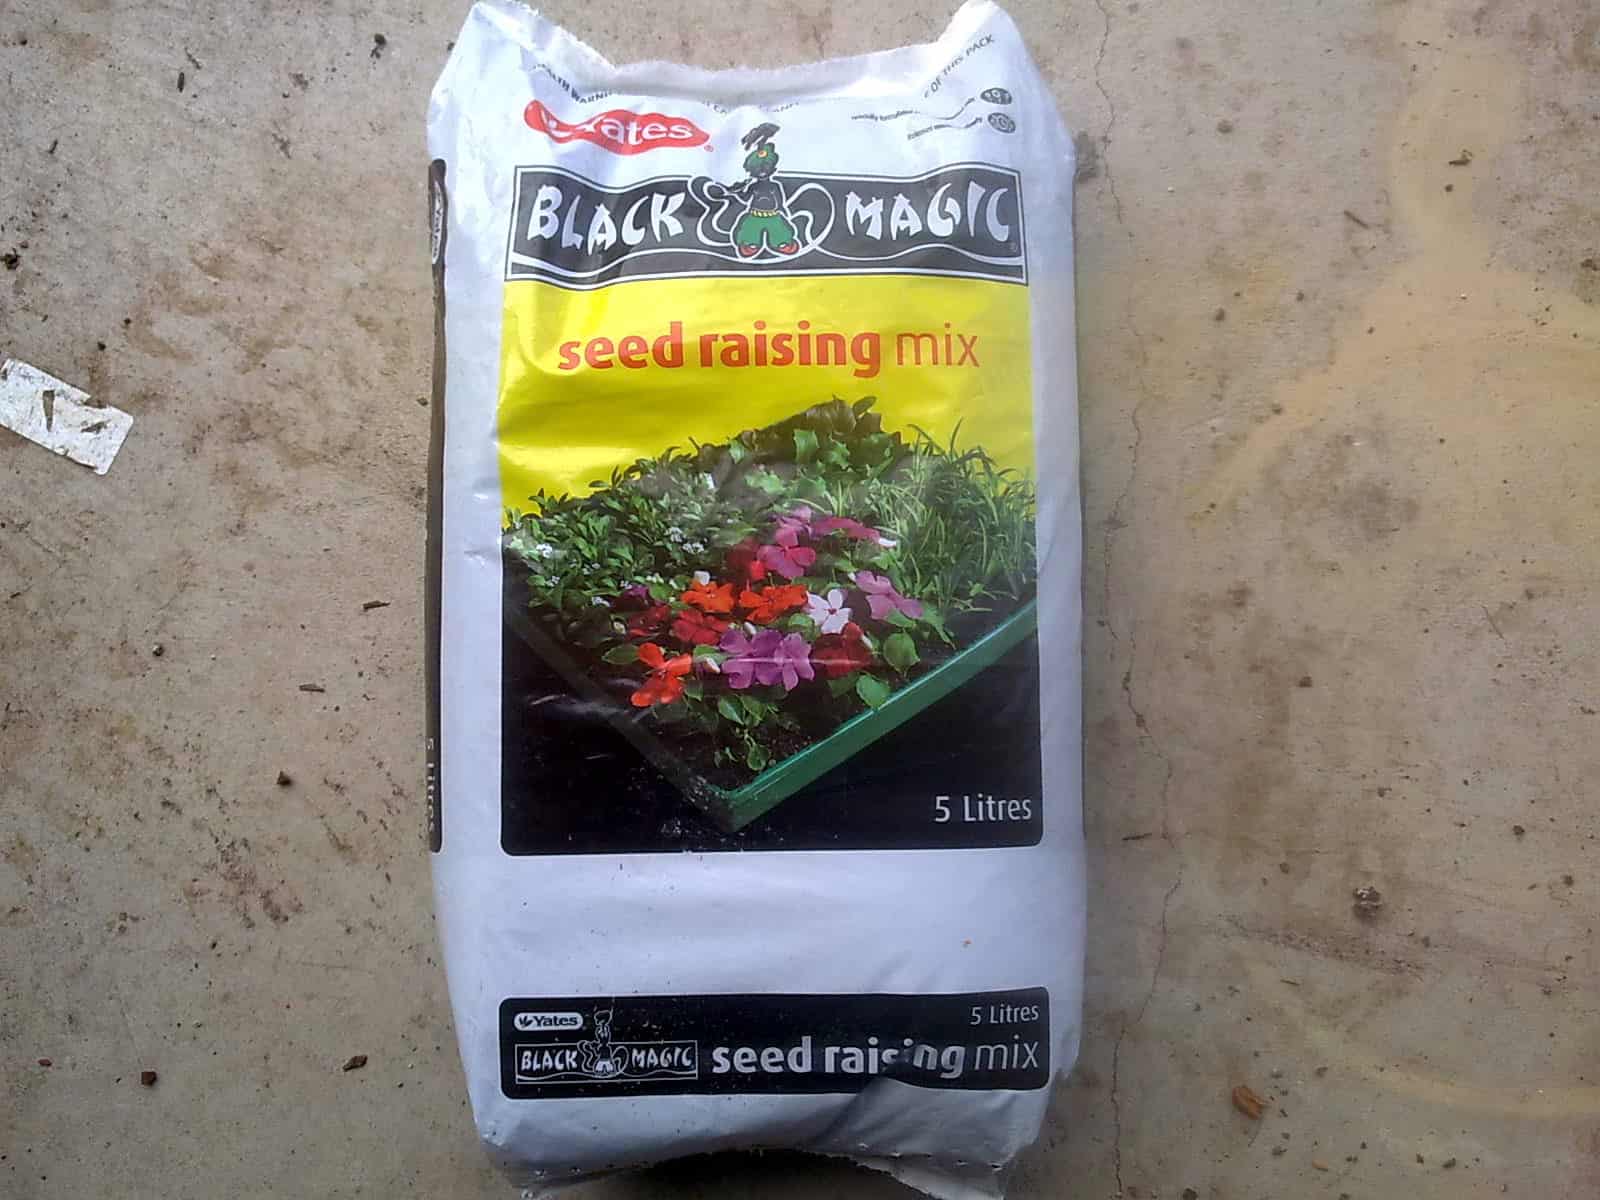 Bag of Yates black magic seed raising mix